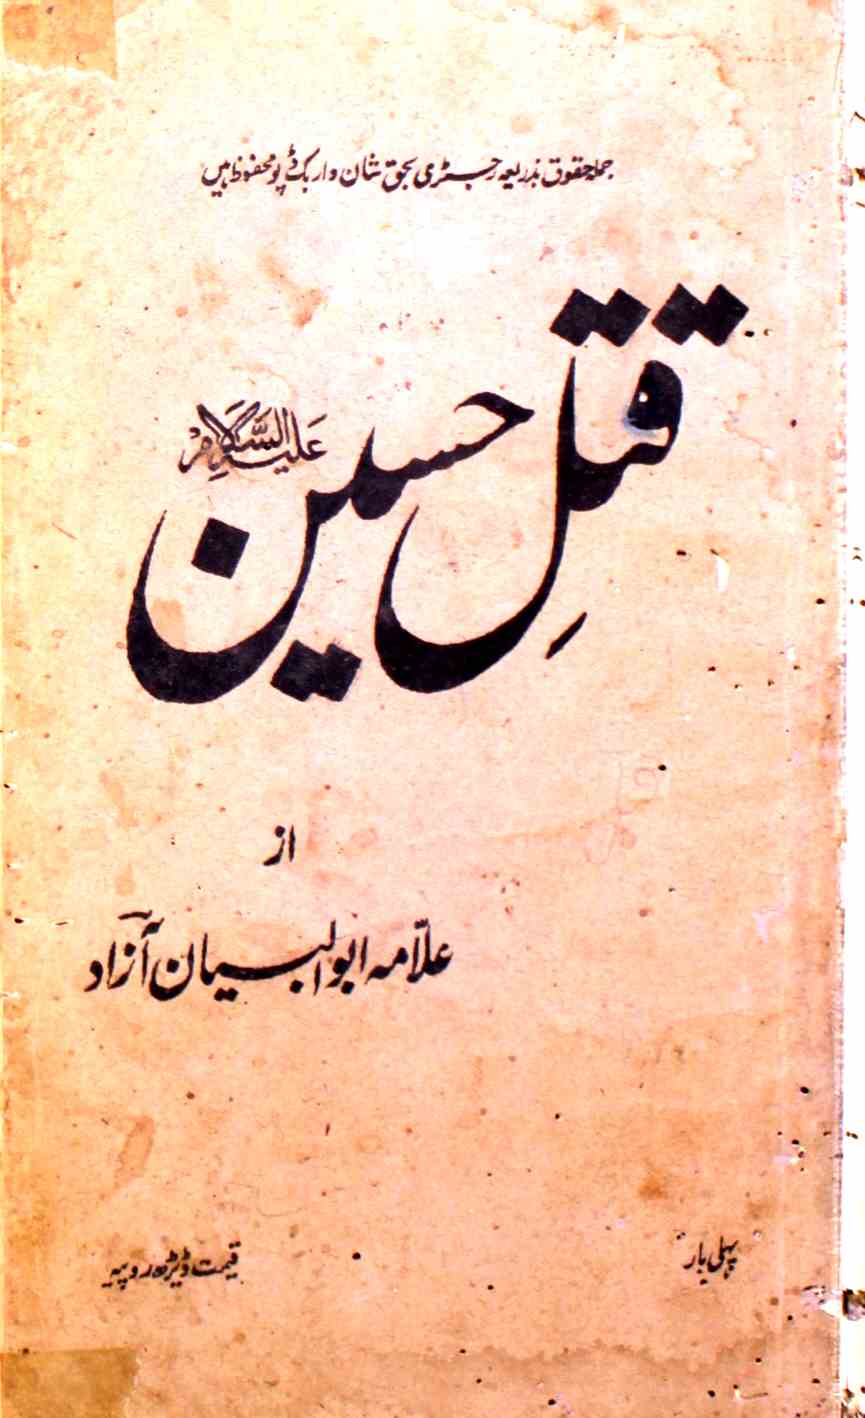 Qatl-e-Hussain